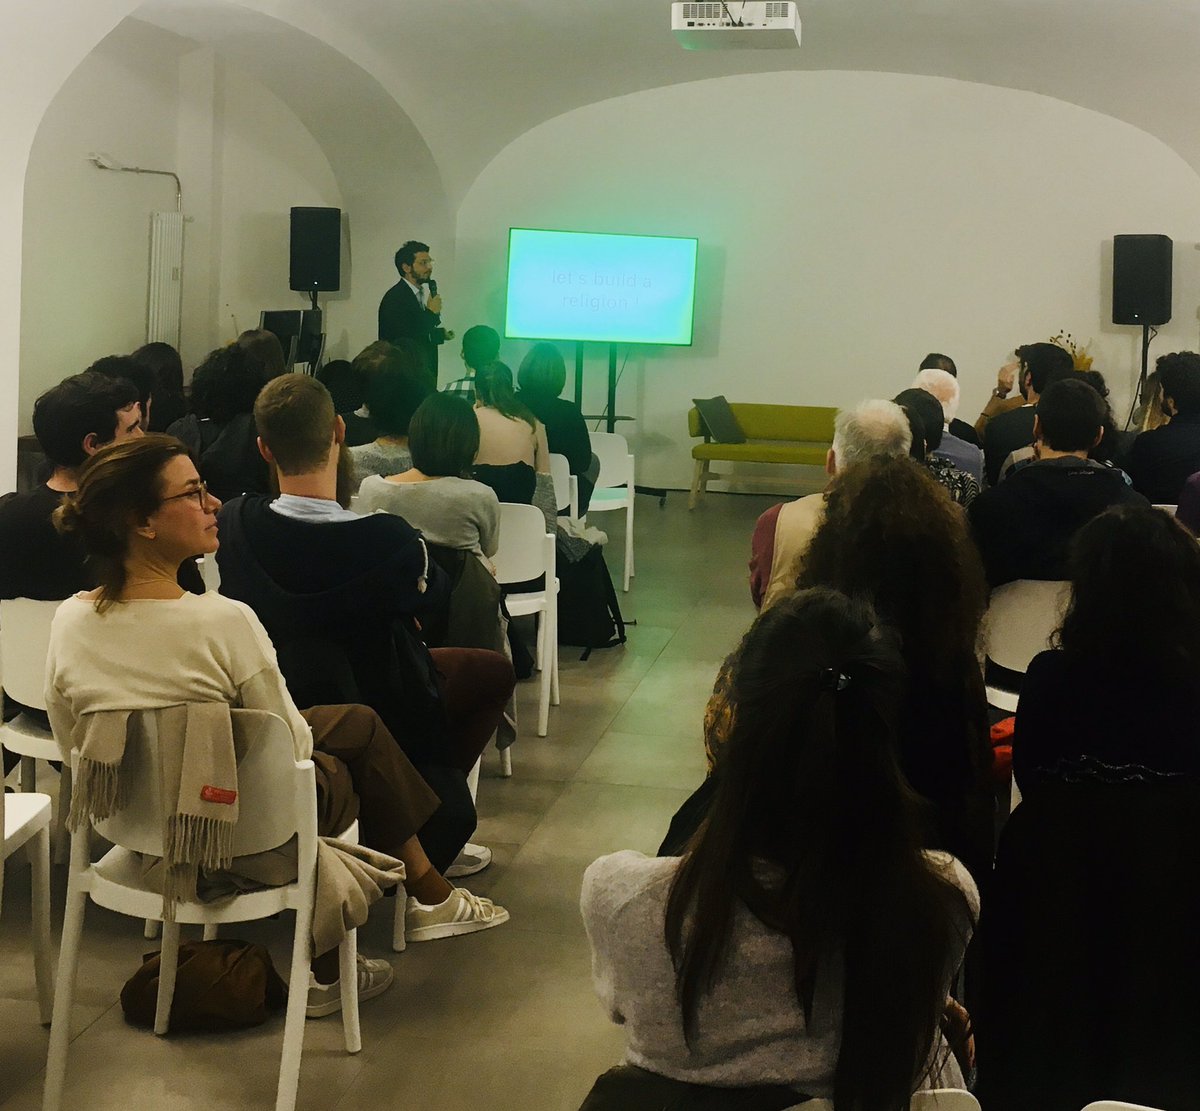 Sala piena questa sera per i #mercoledìdeldesign: oggi @totididio di @wepushsocial ( un #laboratorio di #design per l’ #innovazione #sociale ) ci racconta come #trasformare il tessuto #urbano con #progetti come #MUV #Palermo #Europa in 🗓#TOcityofdesign @twitorino #Torino